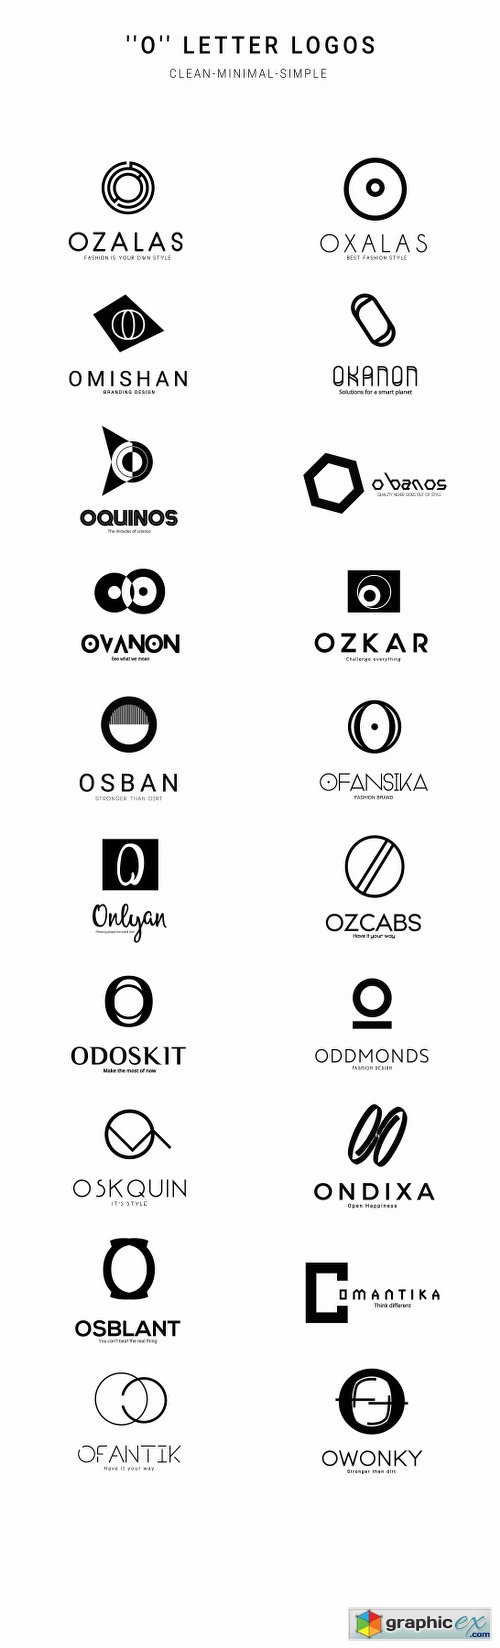 20 "O" Letter Alphabetic Logos